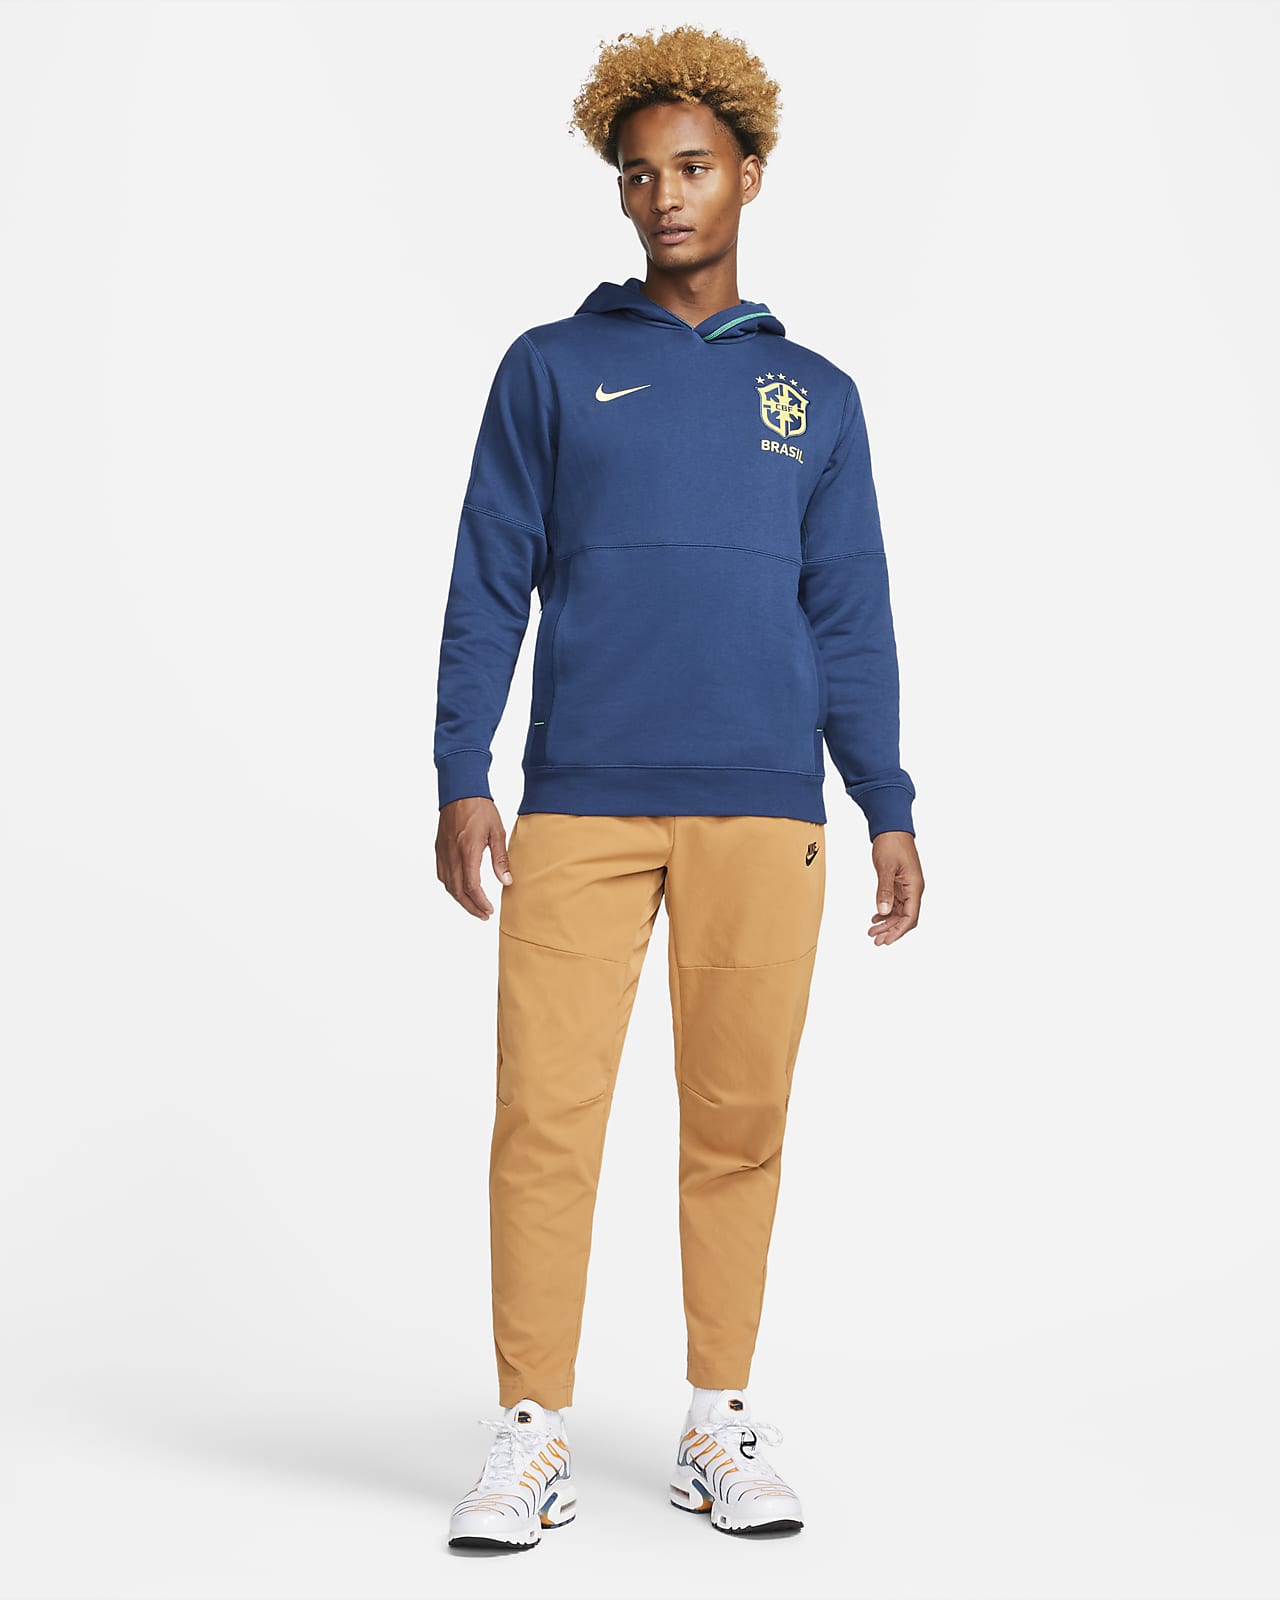 Brazil Travel Sudadera con de tejido Fleece de fútbol - Hombre. Nike ES